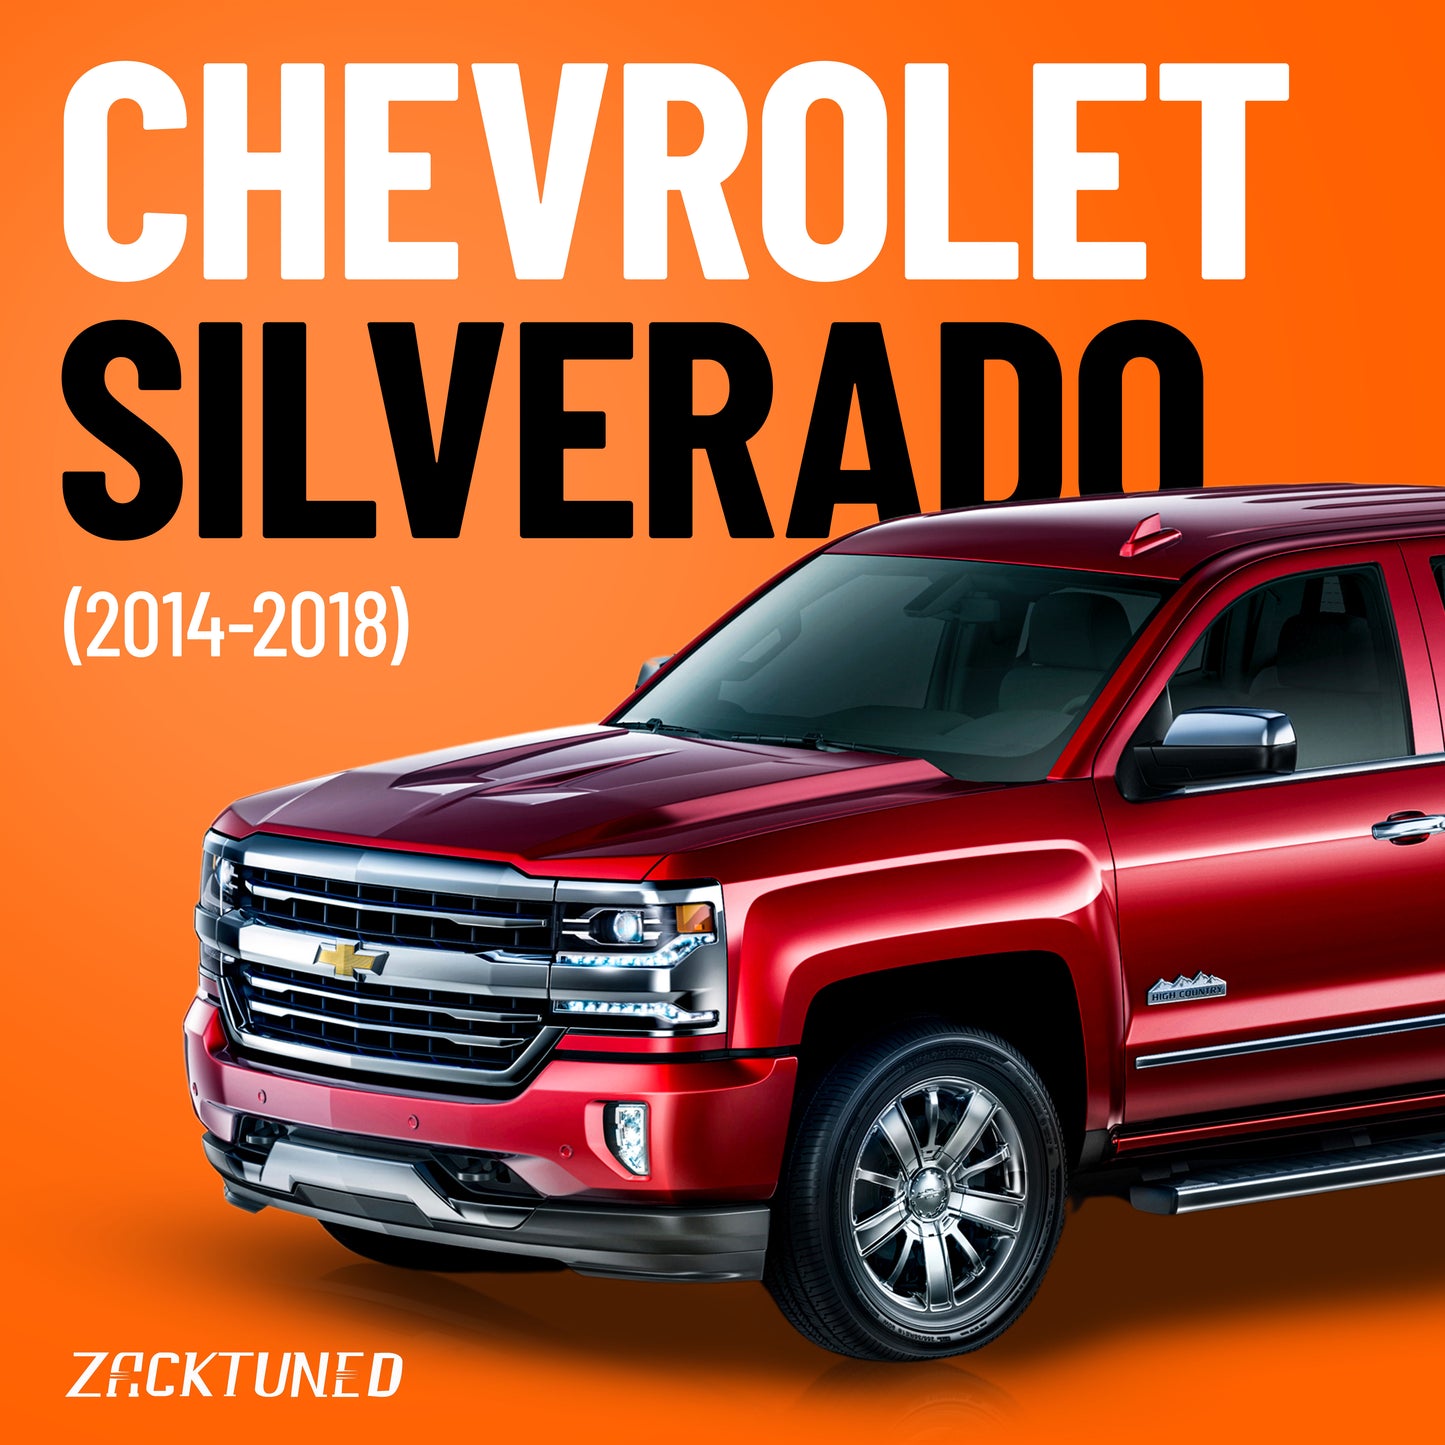 Chevrolet SILVERADO (2014-2018)